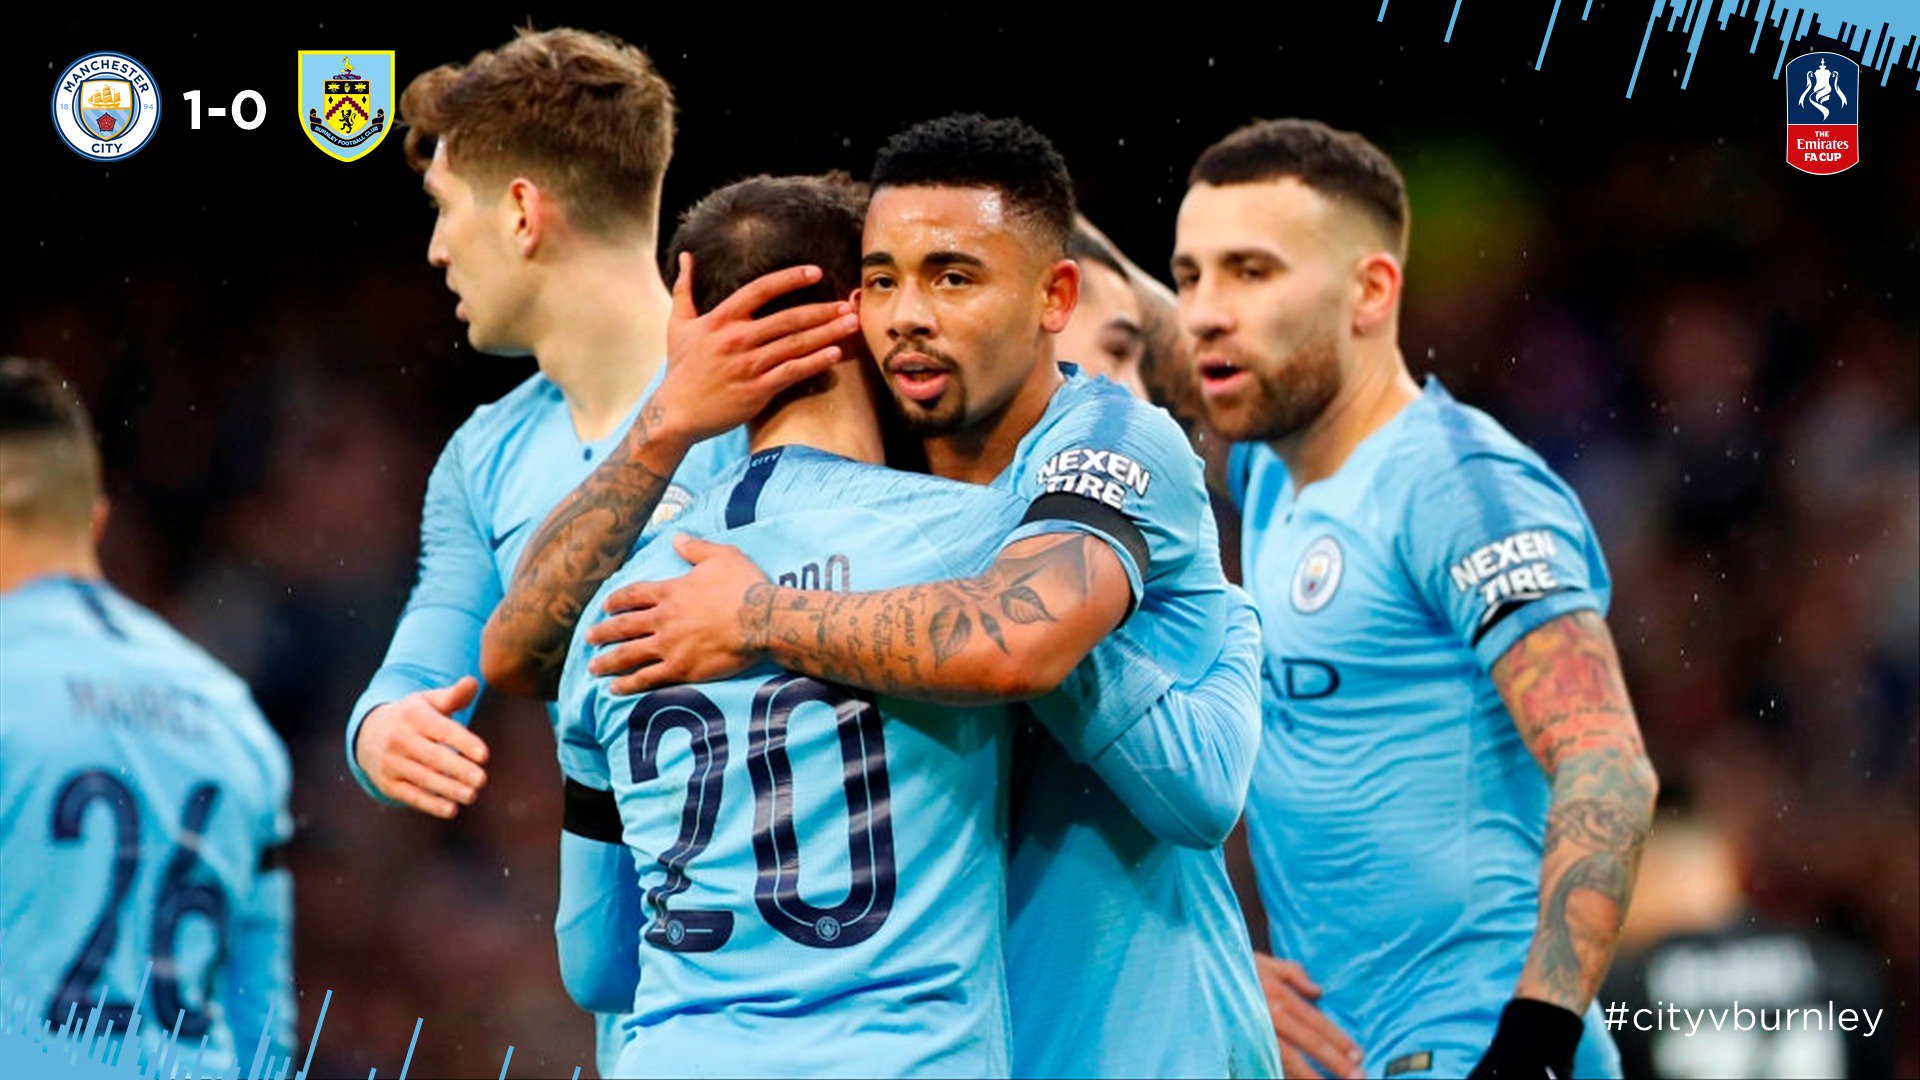 COPA DA INGLATERRA: Gabriel Jesus marca e Manchester City avança com goleada